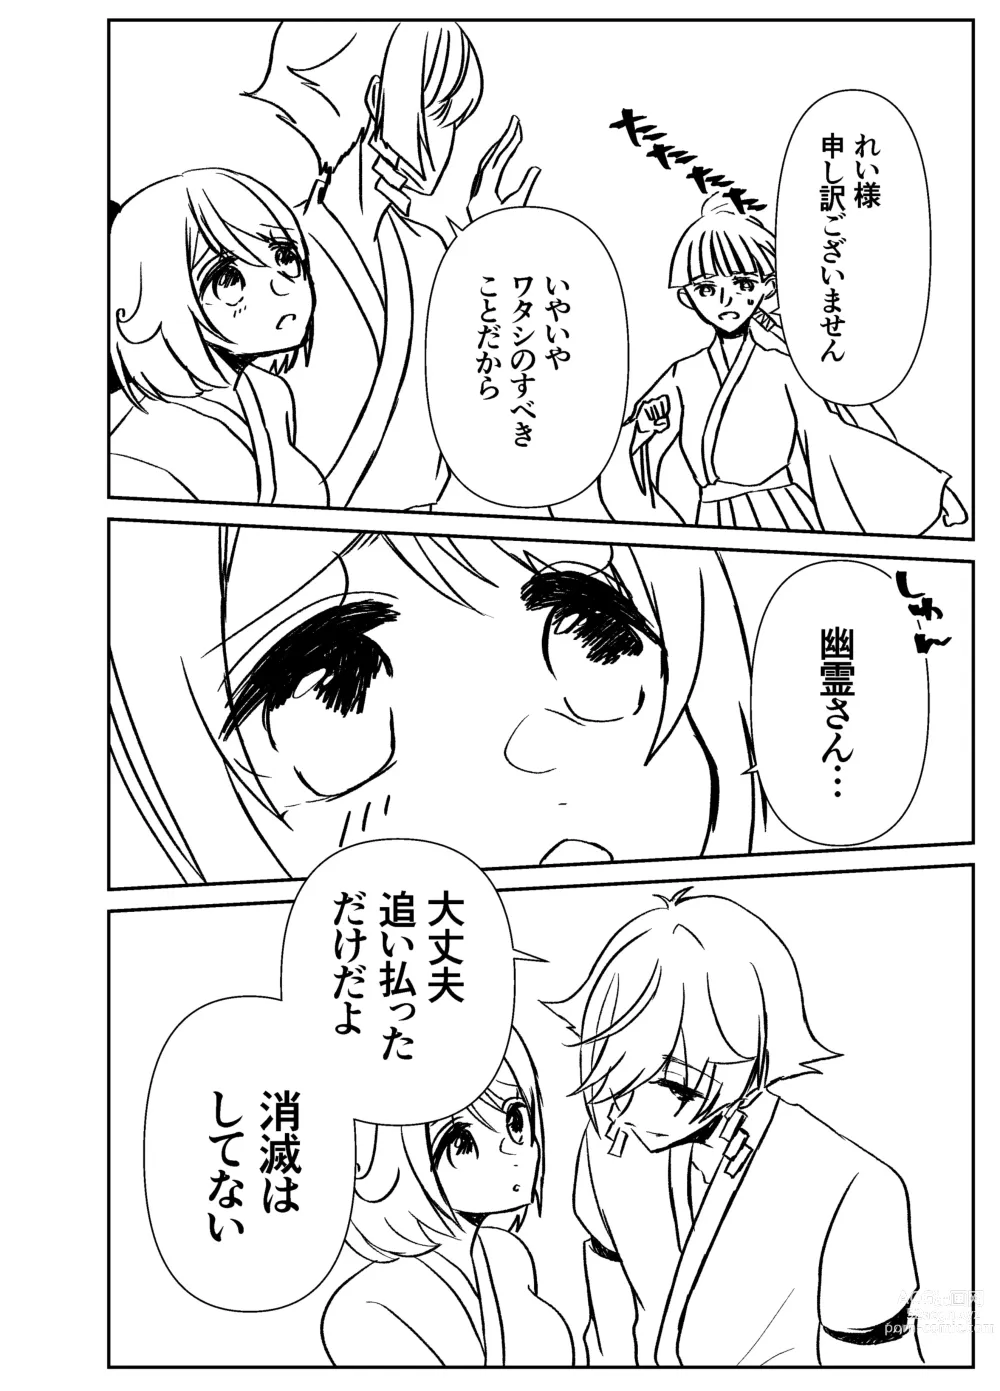 Page 11 of doujinshi Kando Komete o Nagusame Itashimasu Version 2